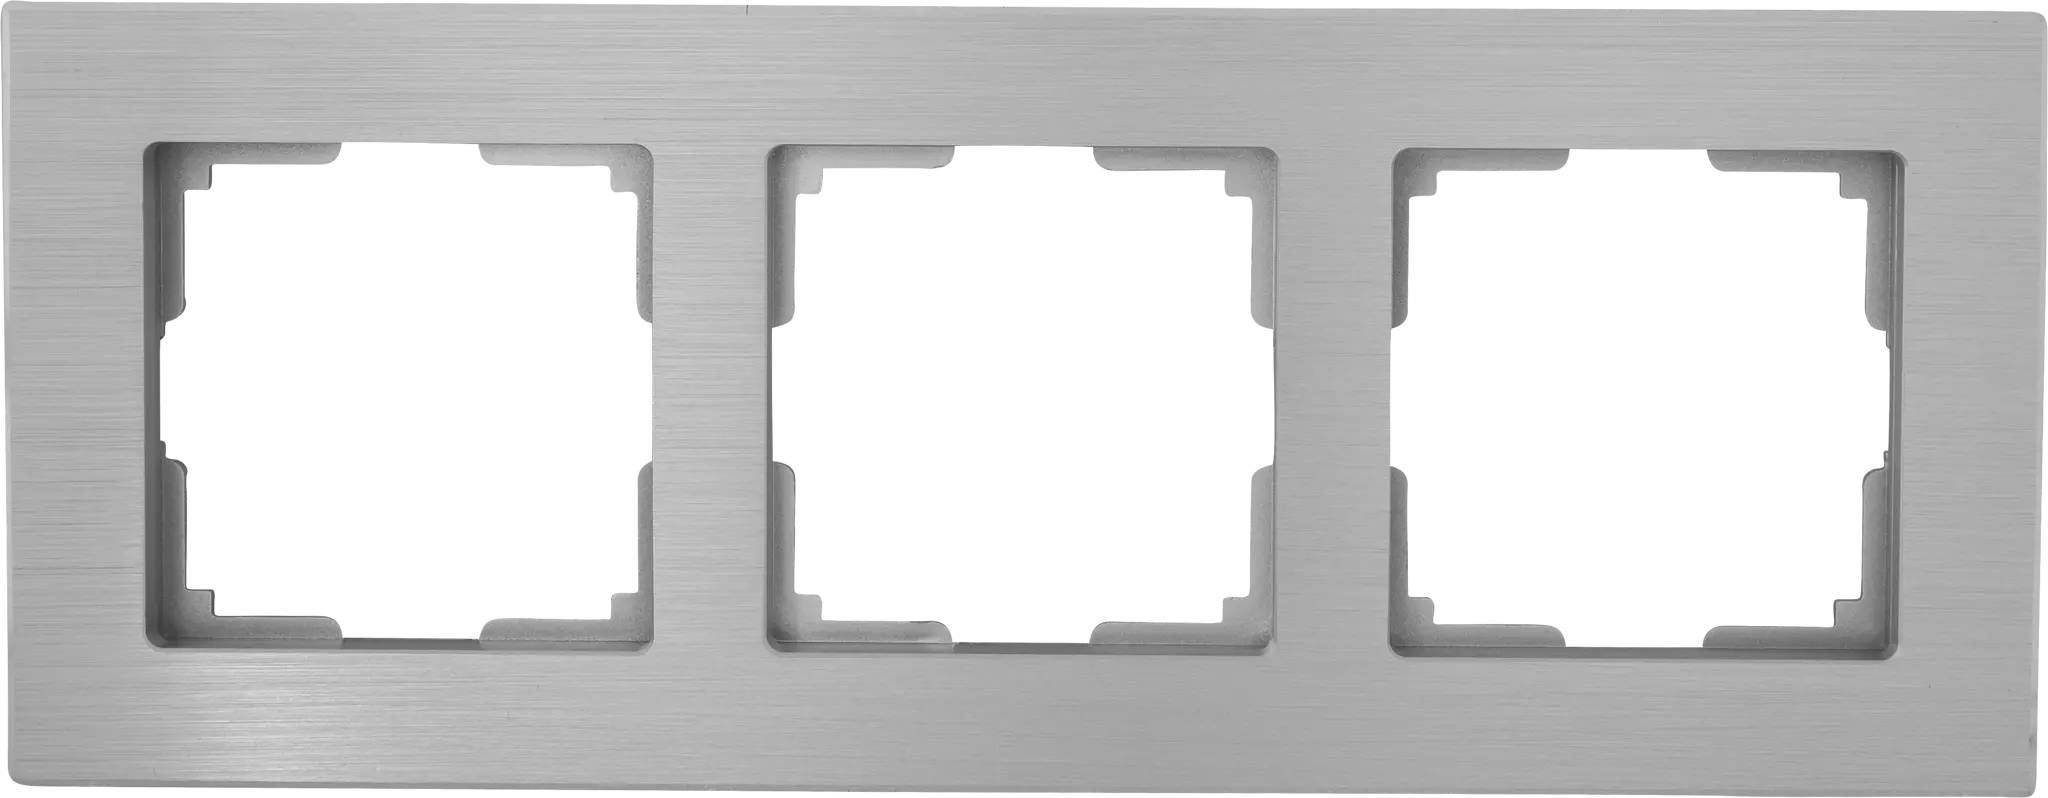 Рамка для розеток и выключателей Werkel Aluminium 3 поста, металл, цвет алюминий рамка на 3 поста werkel aluminium w0031714 4690389158193